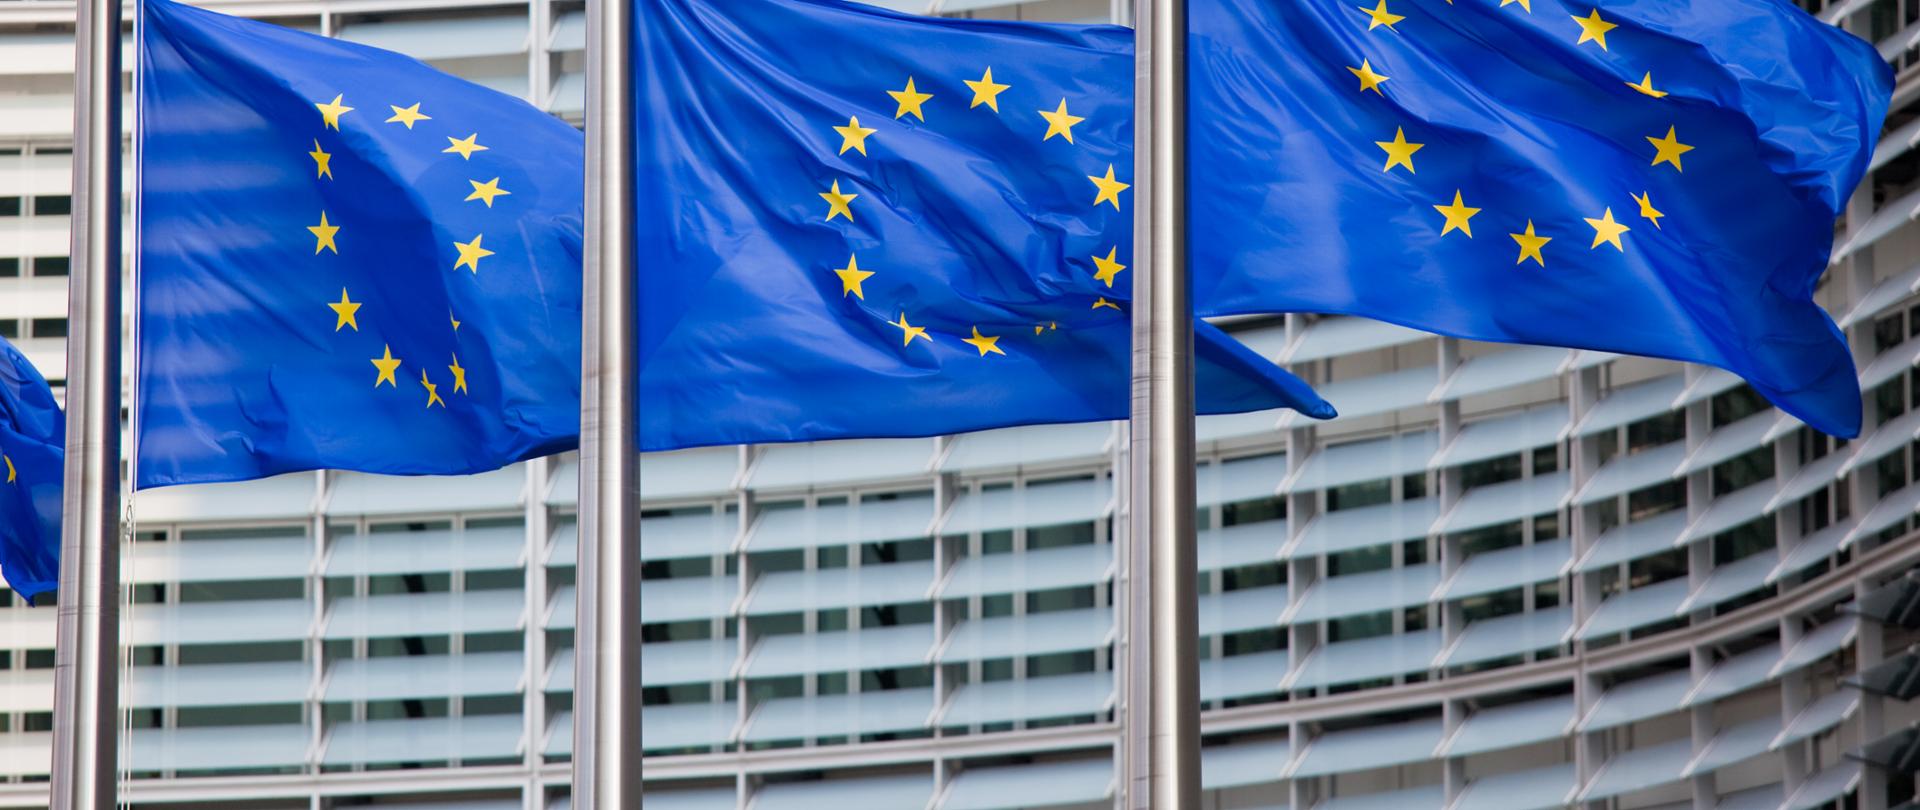 Trzy maszty z flagami Unii Europejskiej stojące na tle gmachu Parlamentu Europejskiego